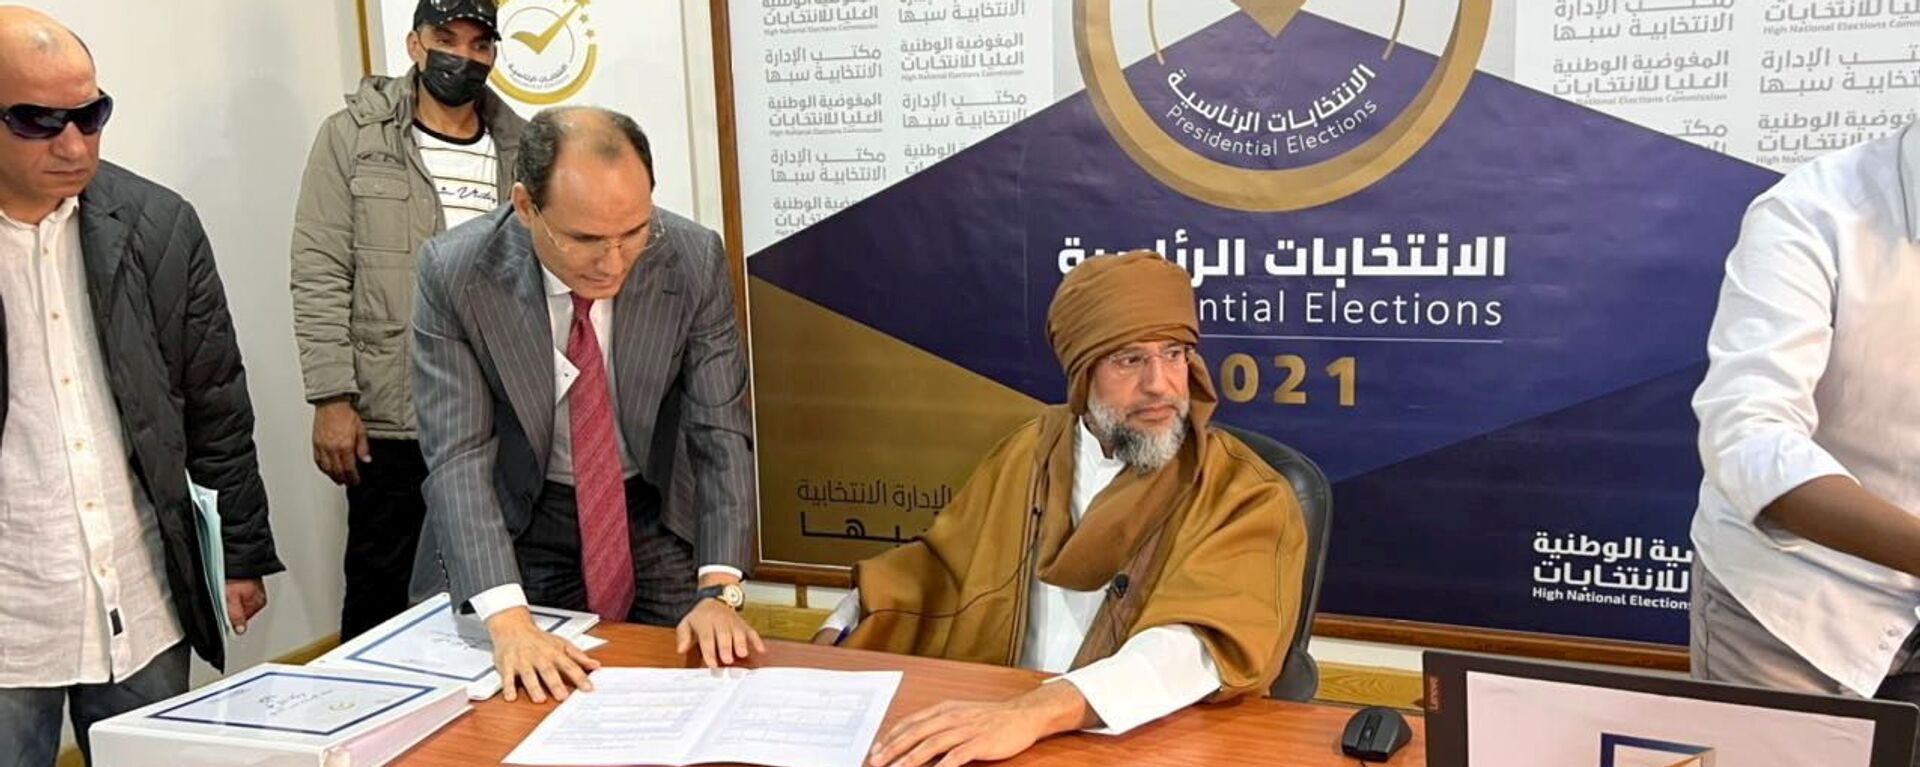 سيف الإسلام القذافي يعلن ترشحه للانتخابات الرئاسية في ليبيا - سبوتنيك عربي, 1920, 25.11.2021